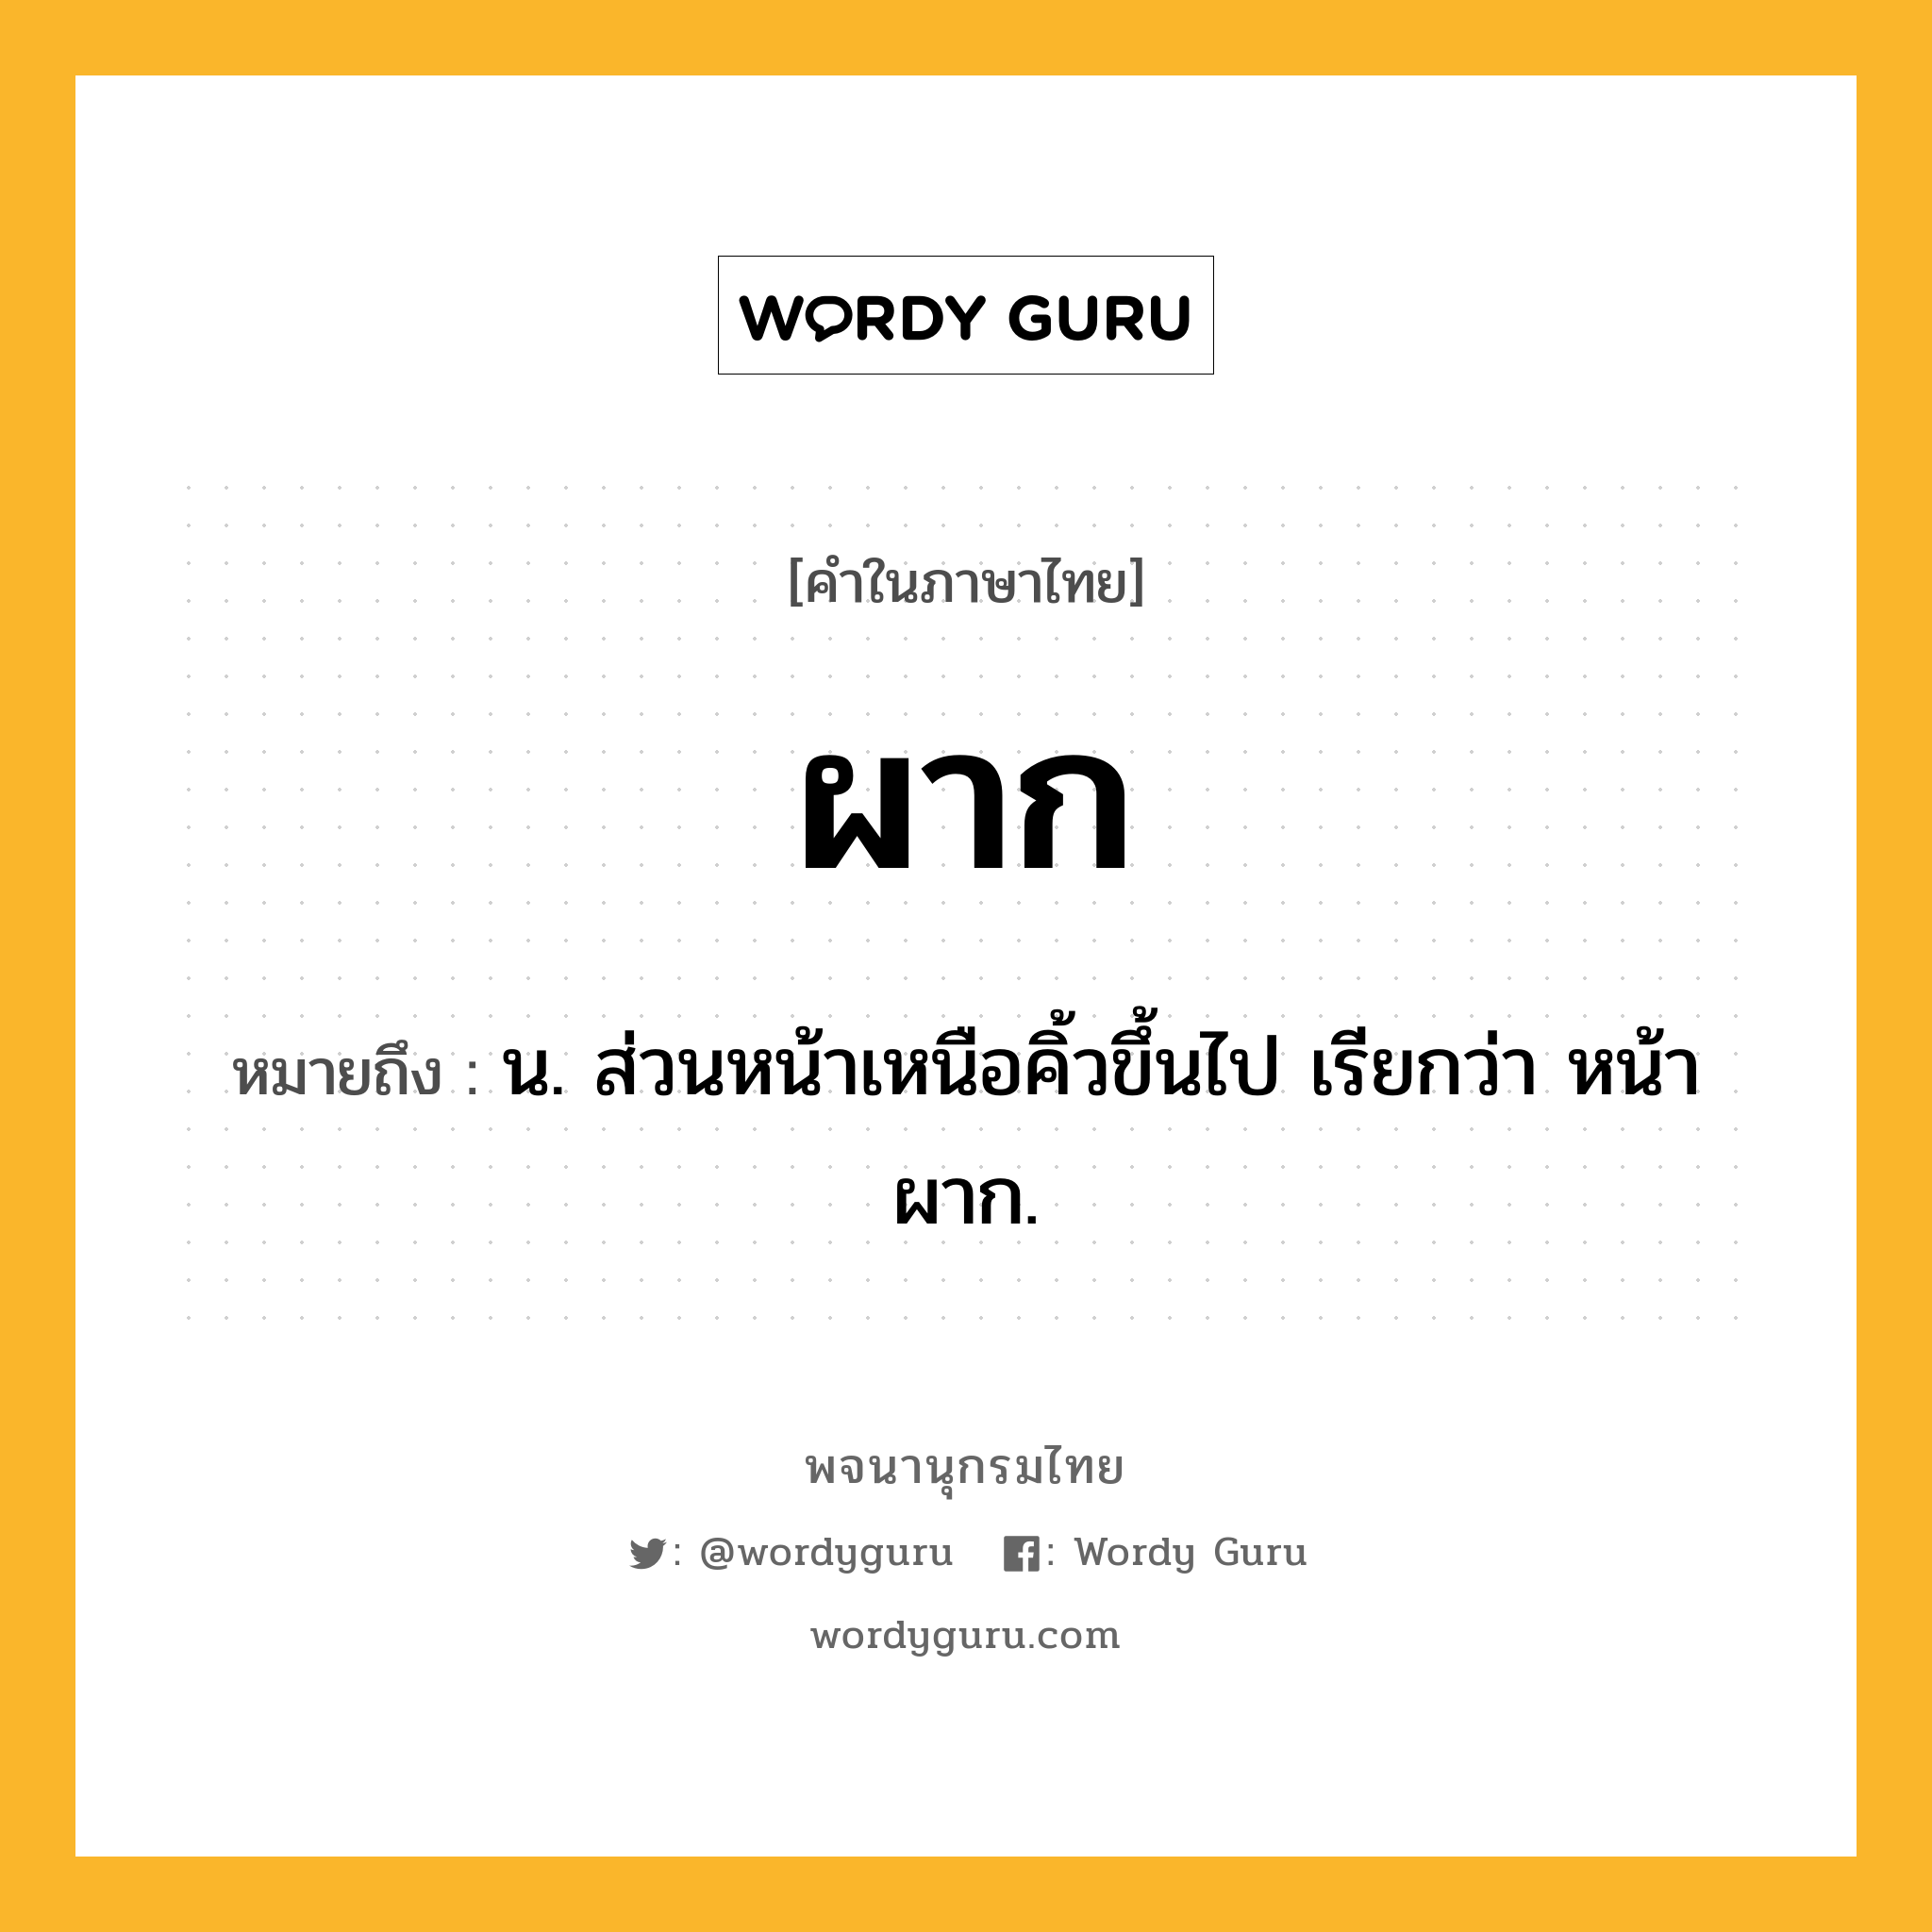 ผาก ความหมาย หมายถึงอะไร?, คำในภาษาไทย ผาก หมายถึง น. ส่วนหน้าเหนือคิ้วขึ้นไป เรียกว่า หน้าผาก.